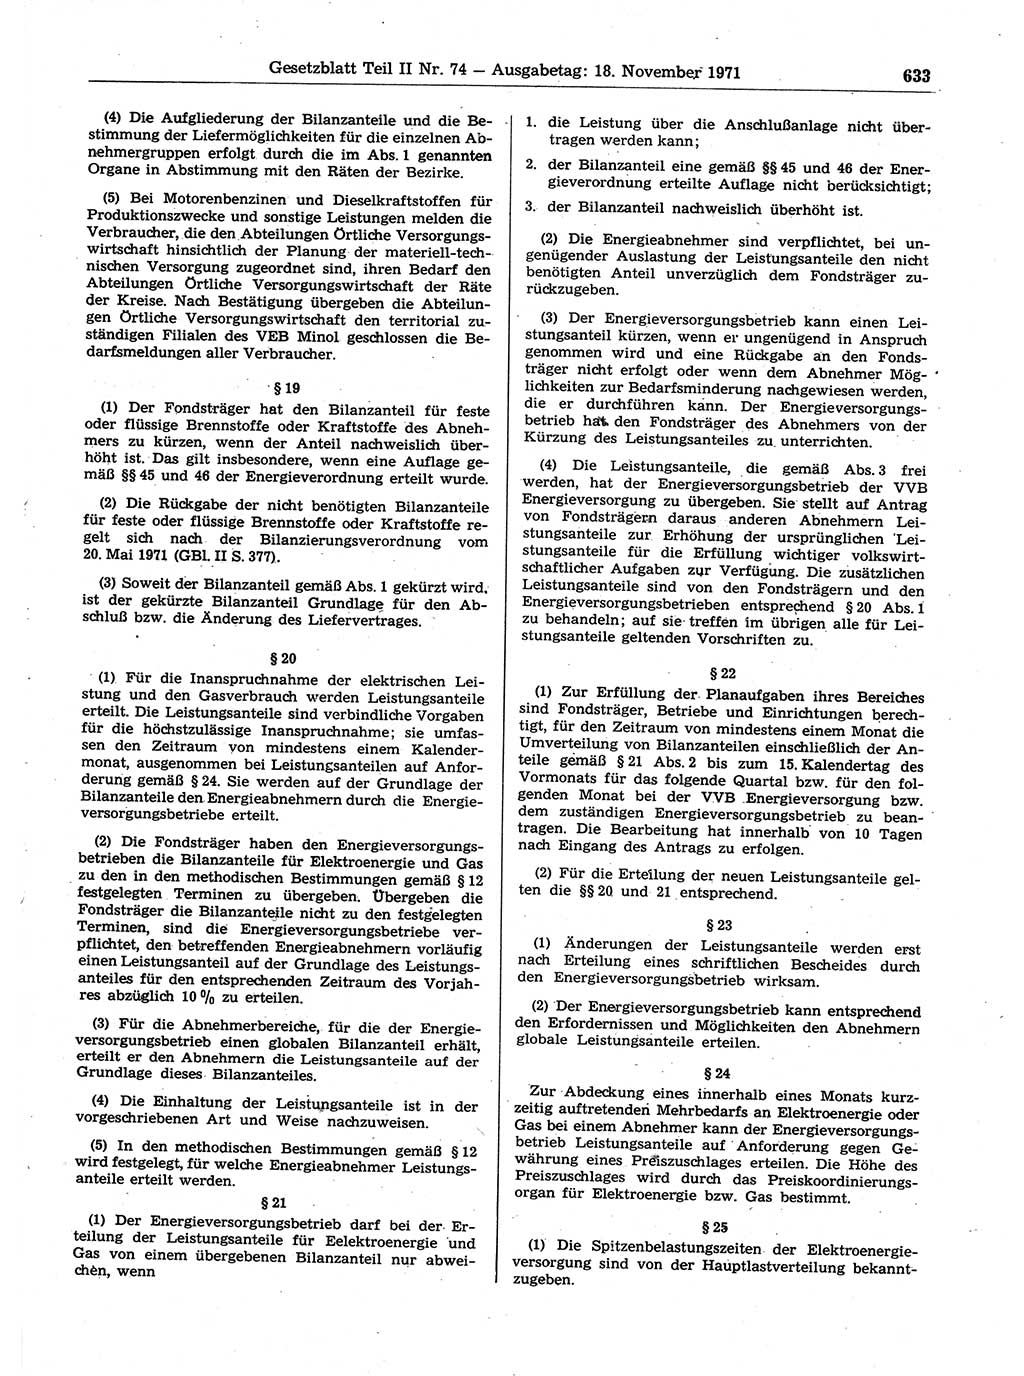 Gesetzblatt (GBl.) der Deutschen Demokratischen Republik (DDR) Teil ⅠⅠ 1971, Seite 633 (GBl. DDR ⅠⅠ 1971, S. 633)